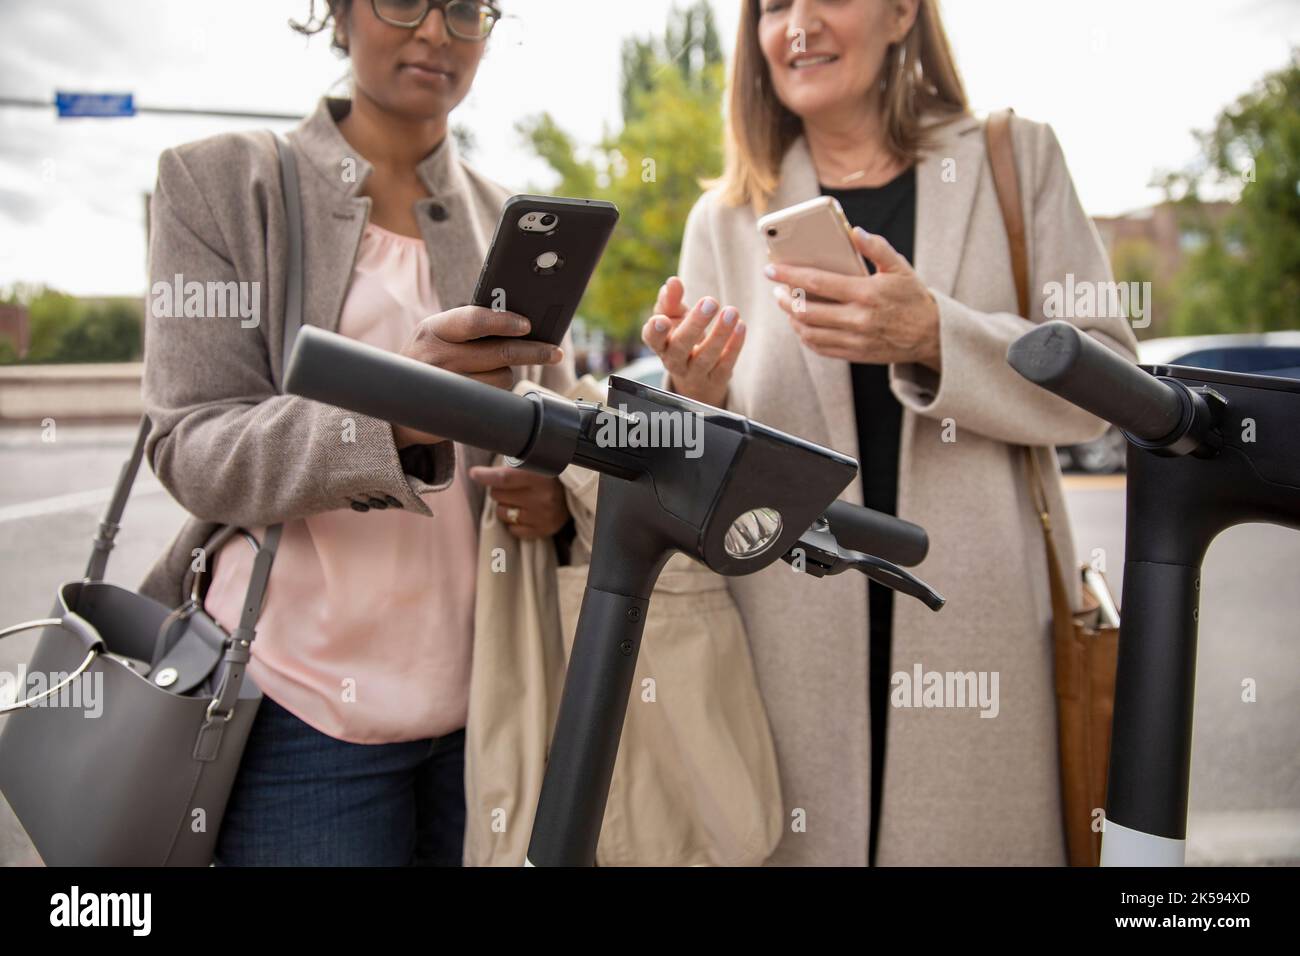 Mujeres de negocios con teléfonos inteligentes que alquilan scooters públicos Foto de stock